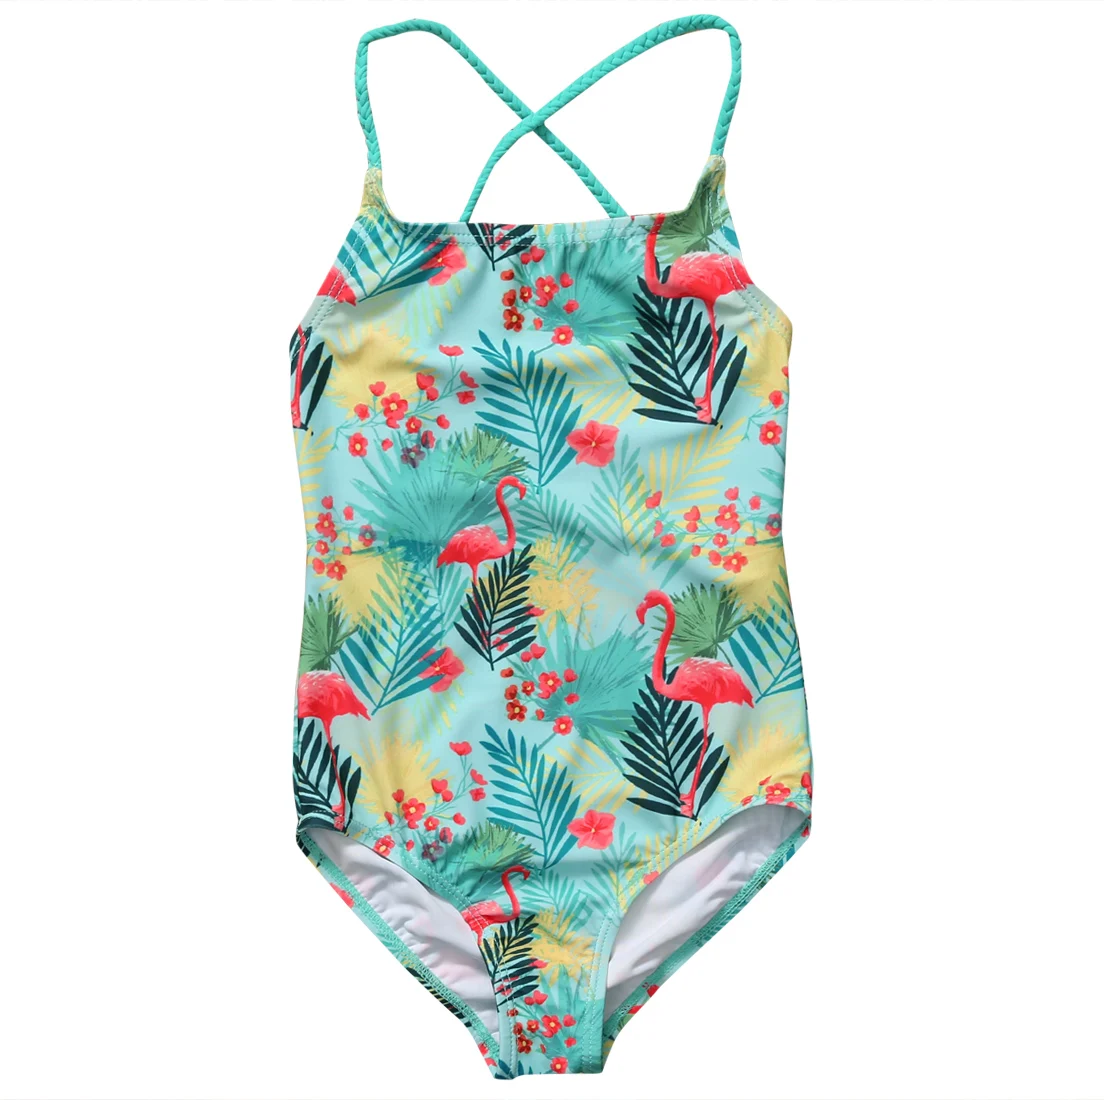 Бикини для маленьких девочек, купальный костюм, летний детский купальник с фламинго, одежда для купания, одежда для купания